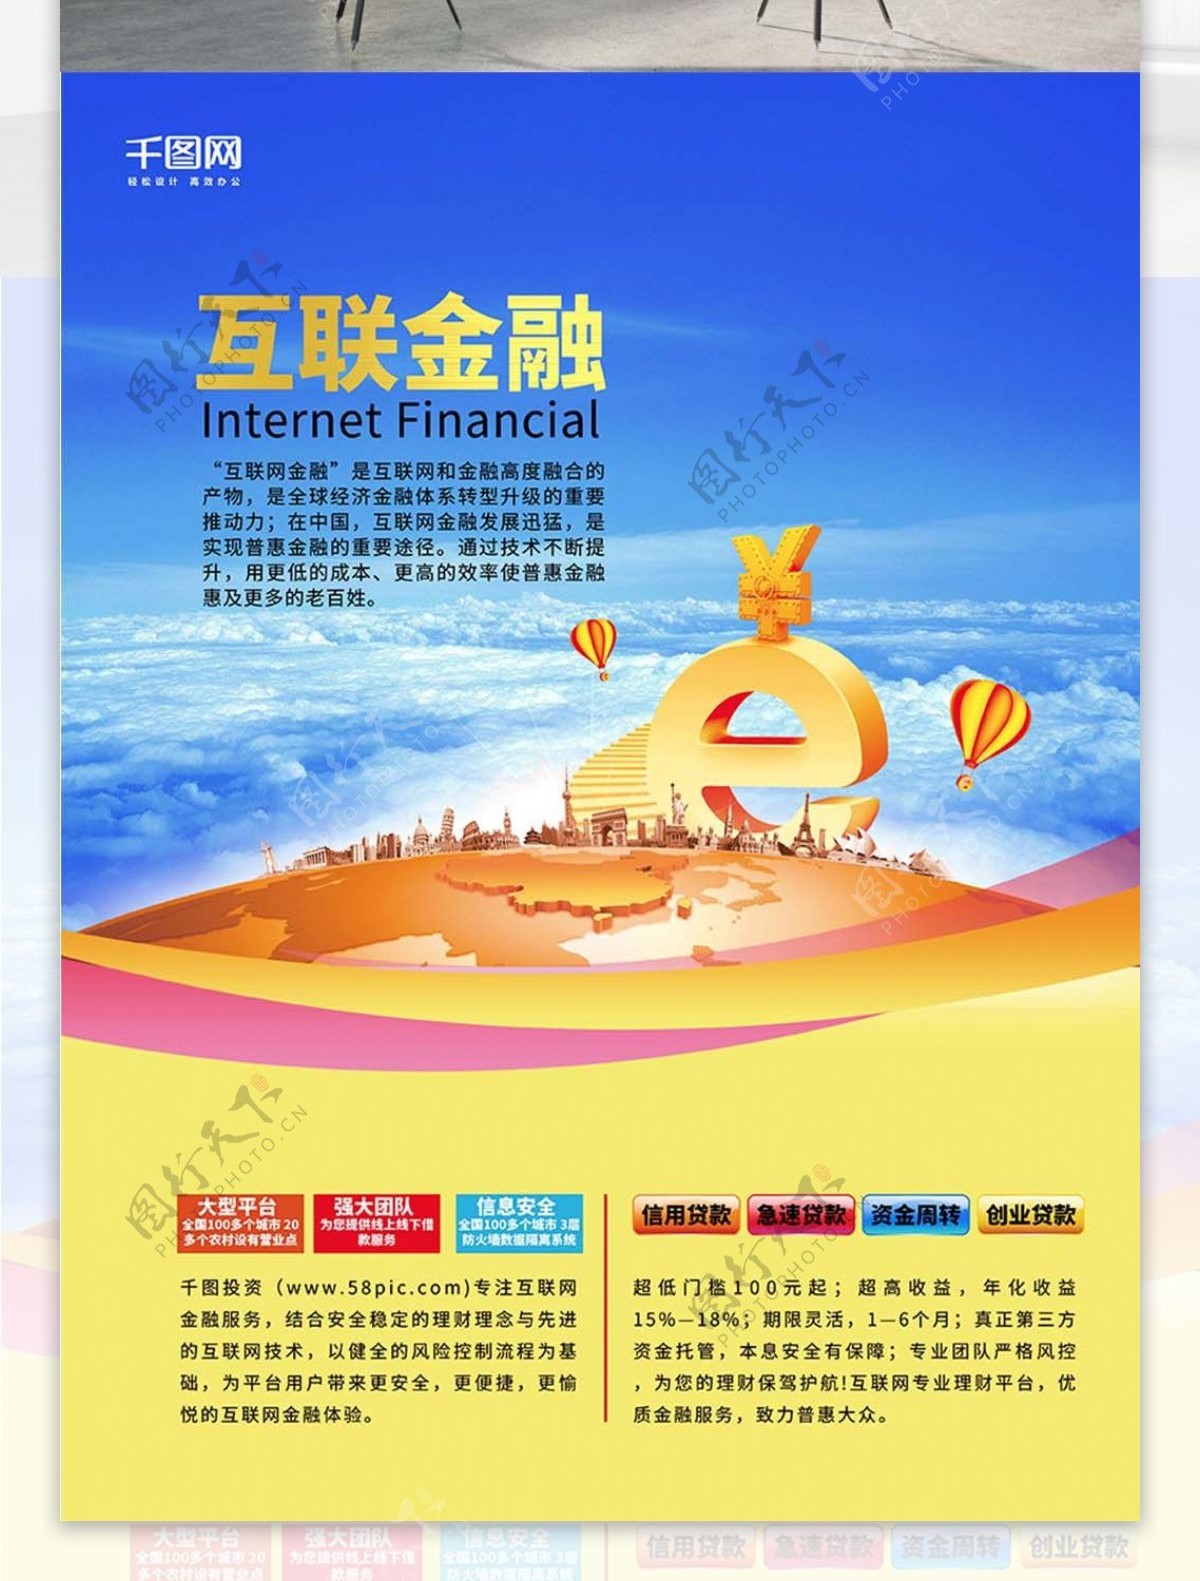 互联金融蓝黄色简洁创意互联网金融海报